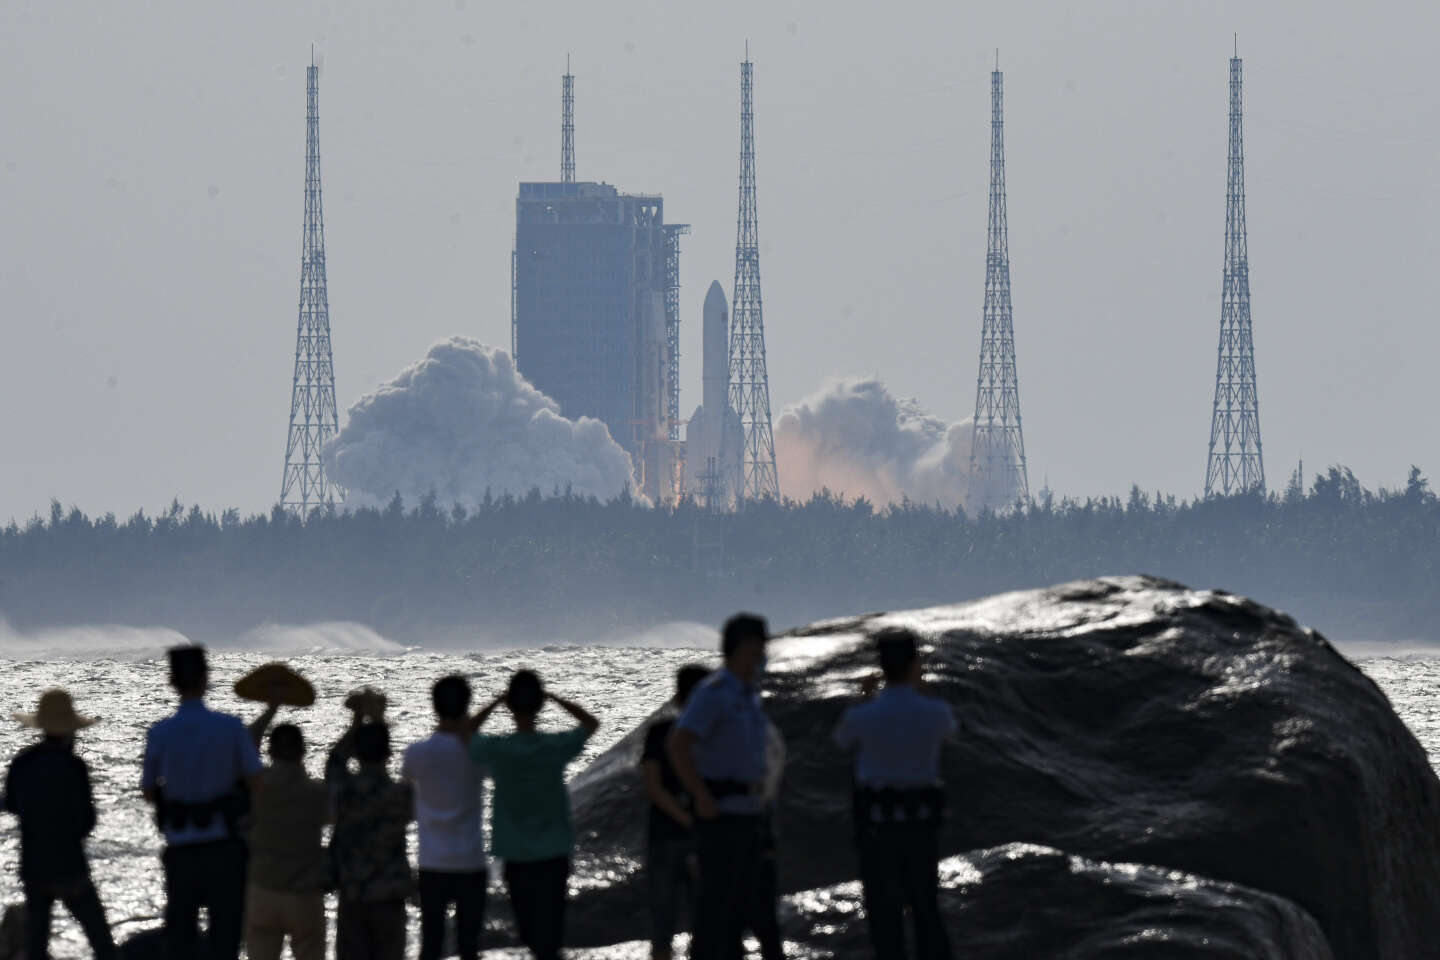 La Chine a termin lassemblage de sa station spatiale